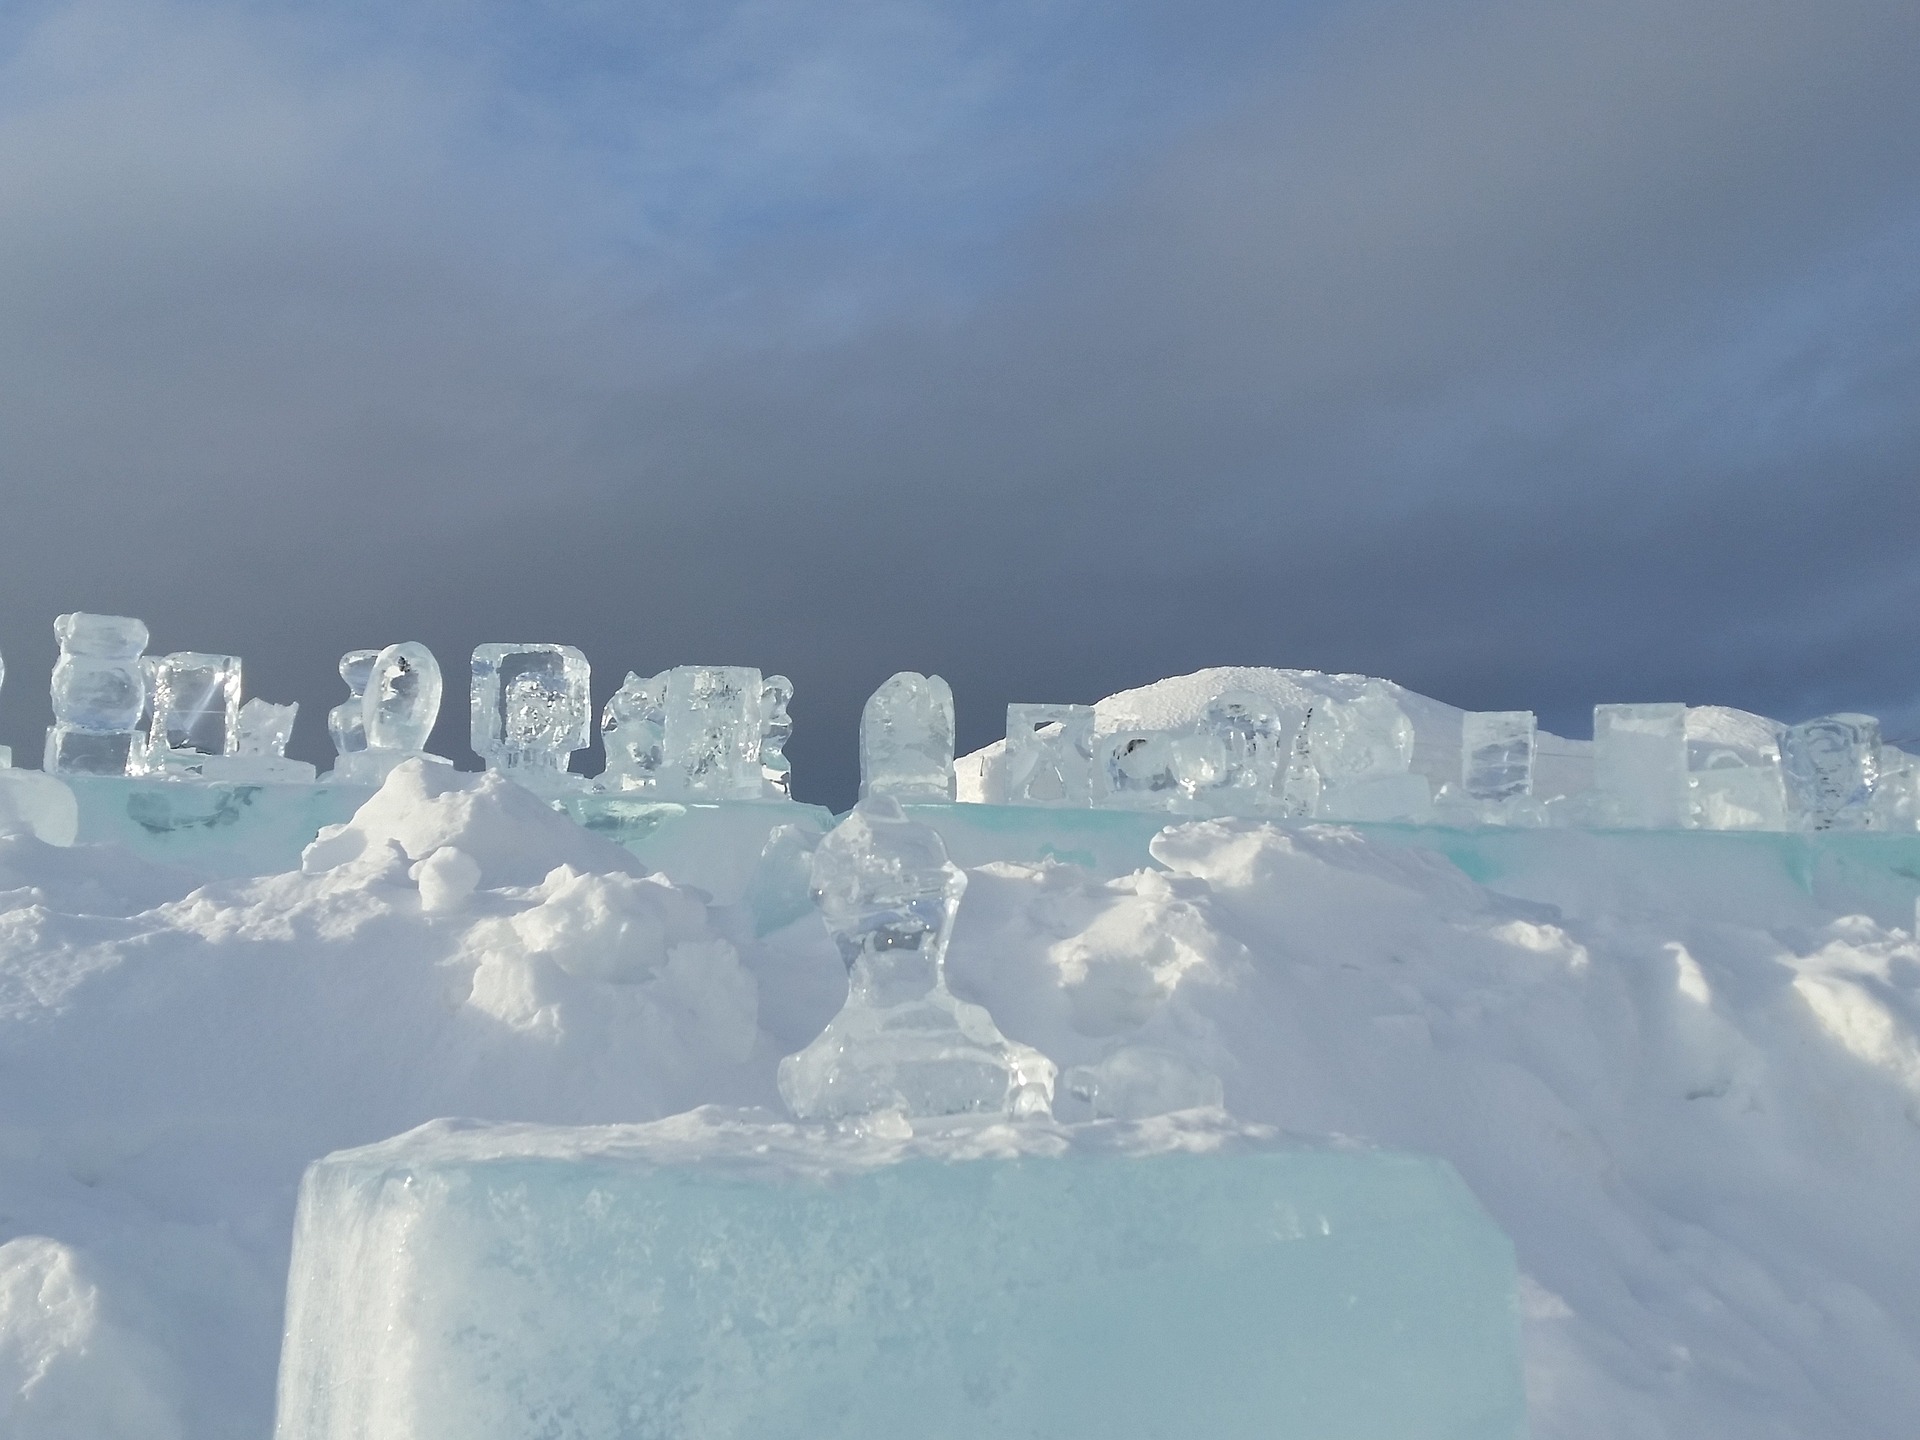 Галерея ледовых скульптур откроется в Апатитах 2 января